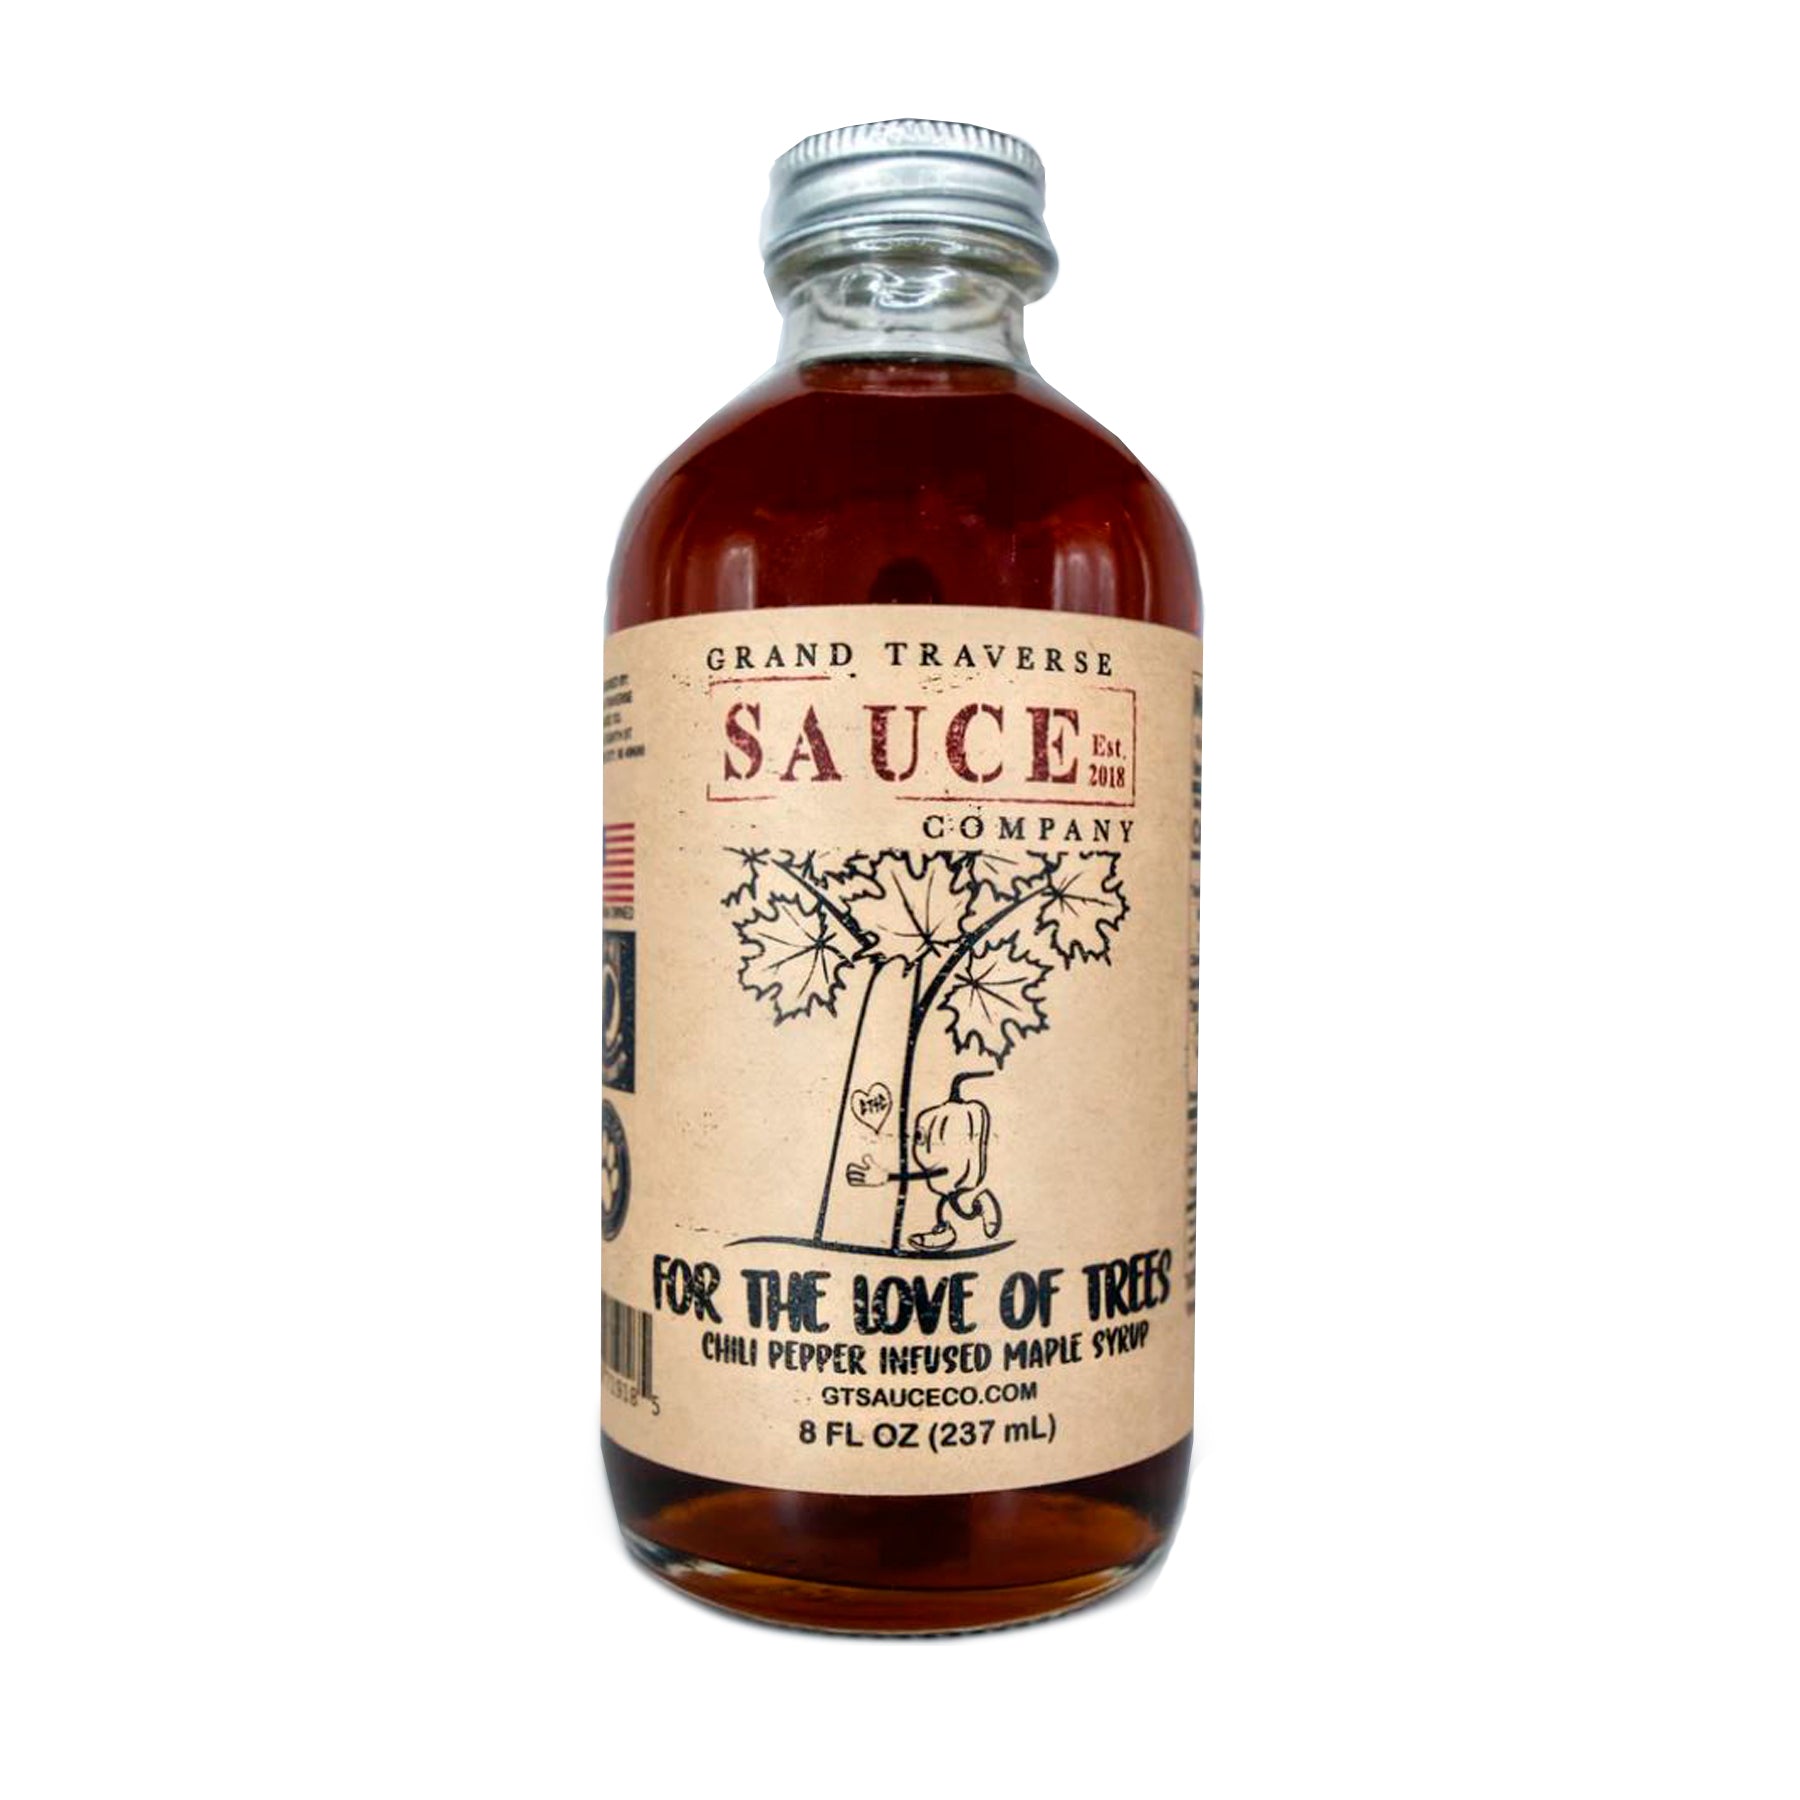 12 oz Maple Syrup Bottle  Smoky Lake Maple Products